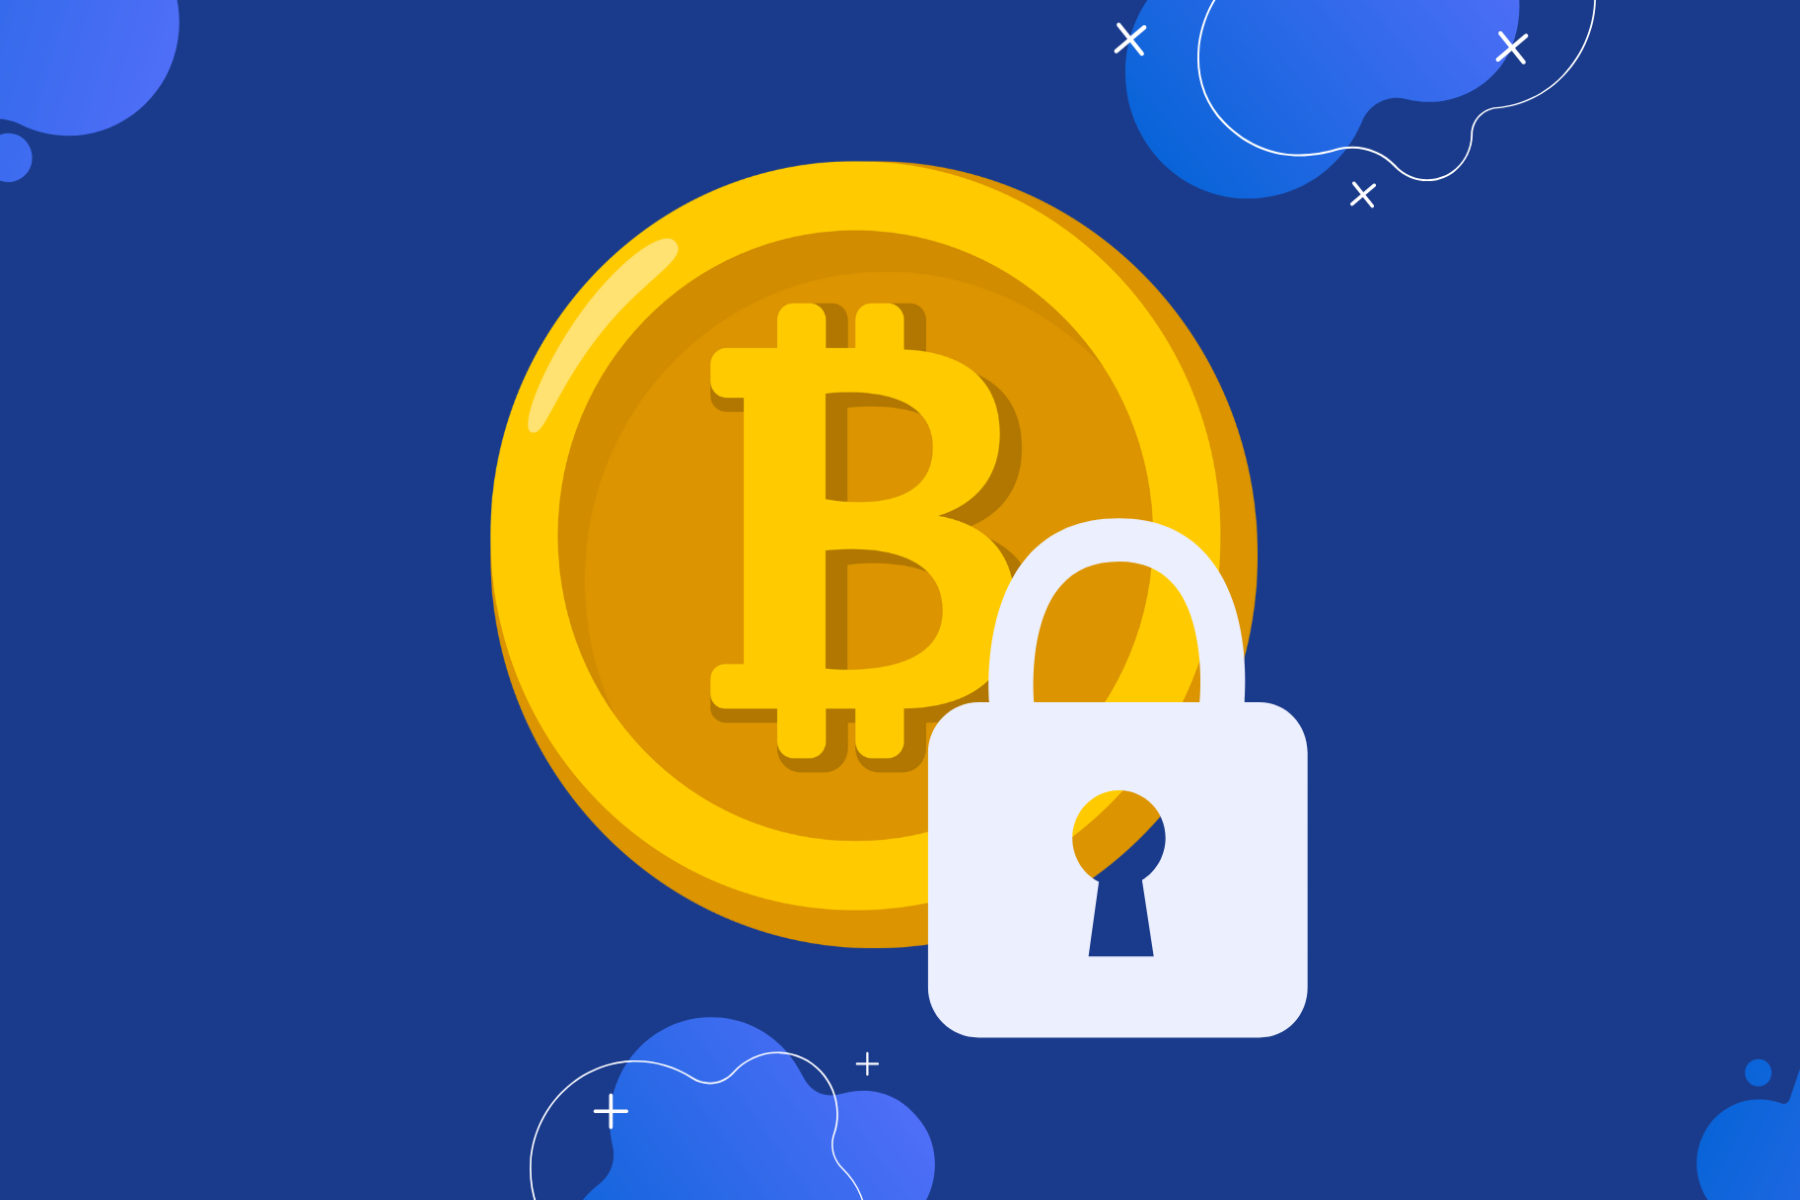 A Bitcoin with a security padlock